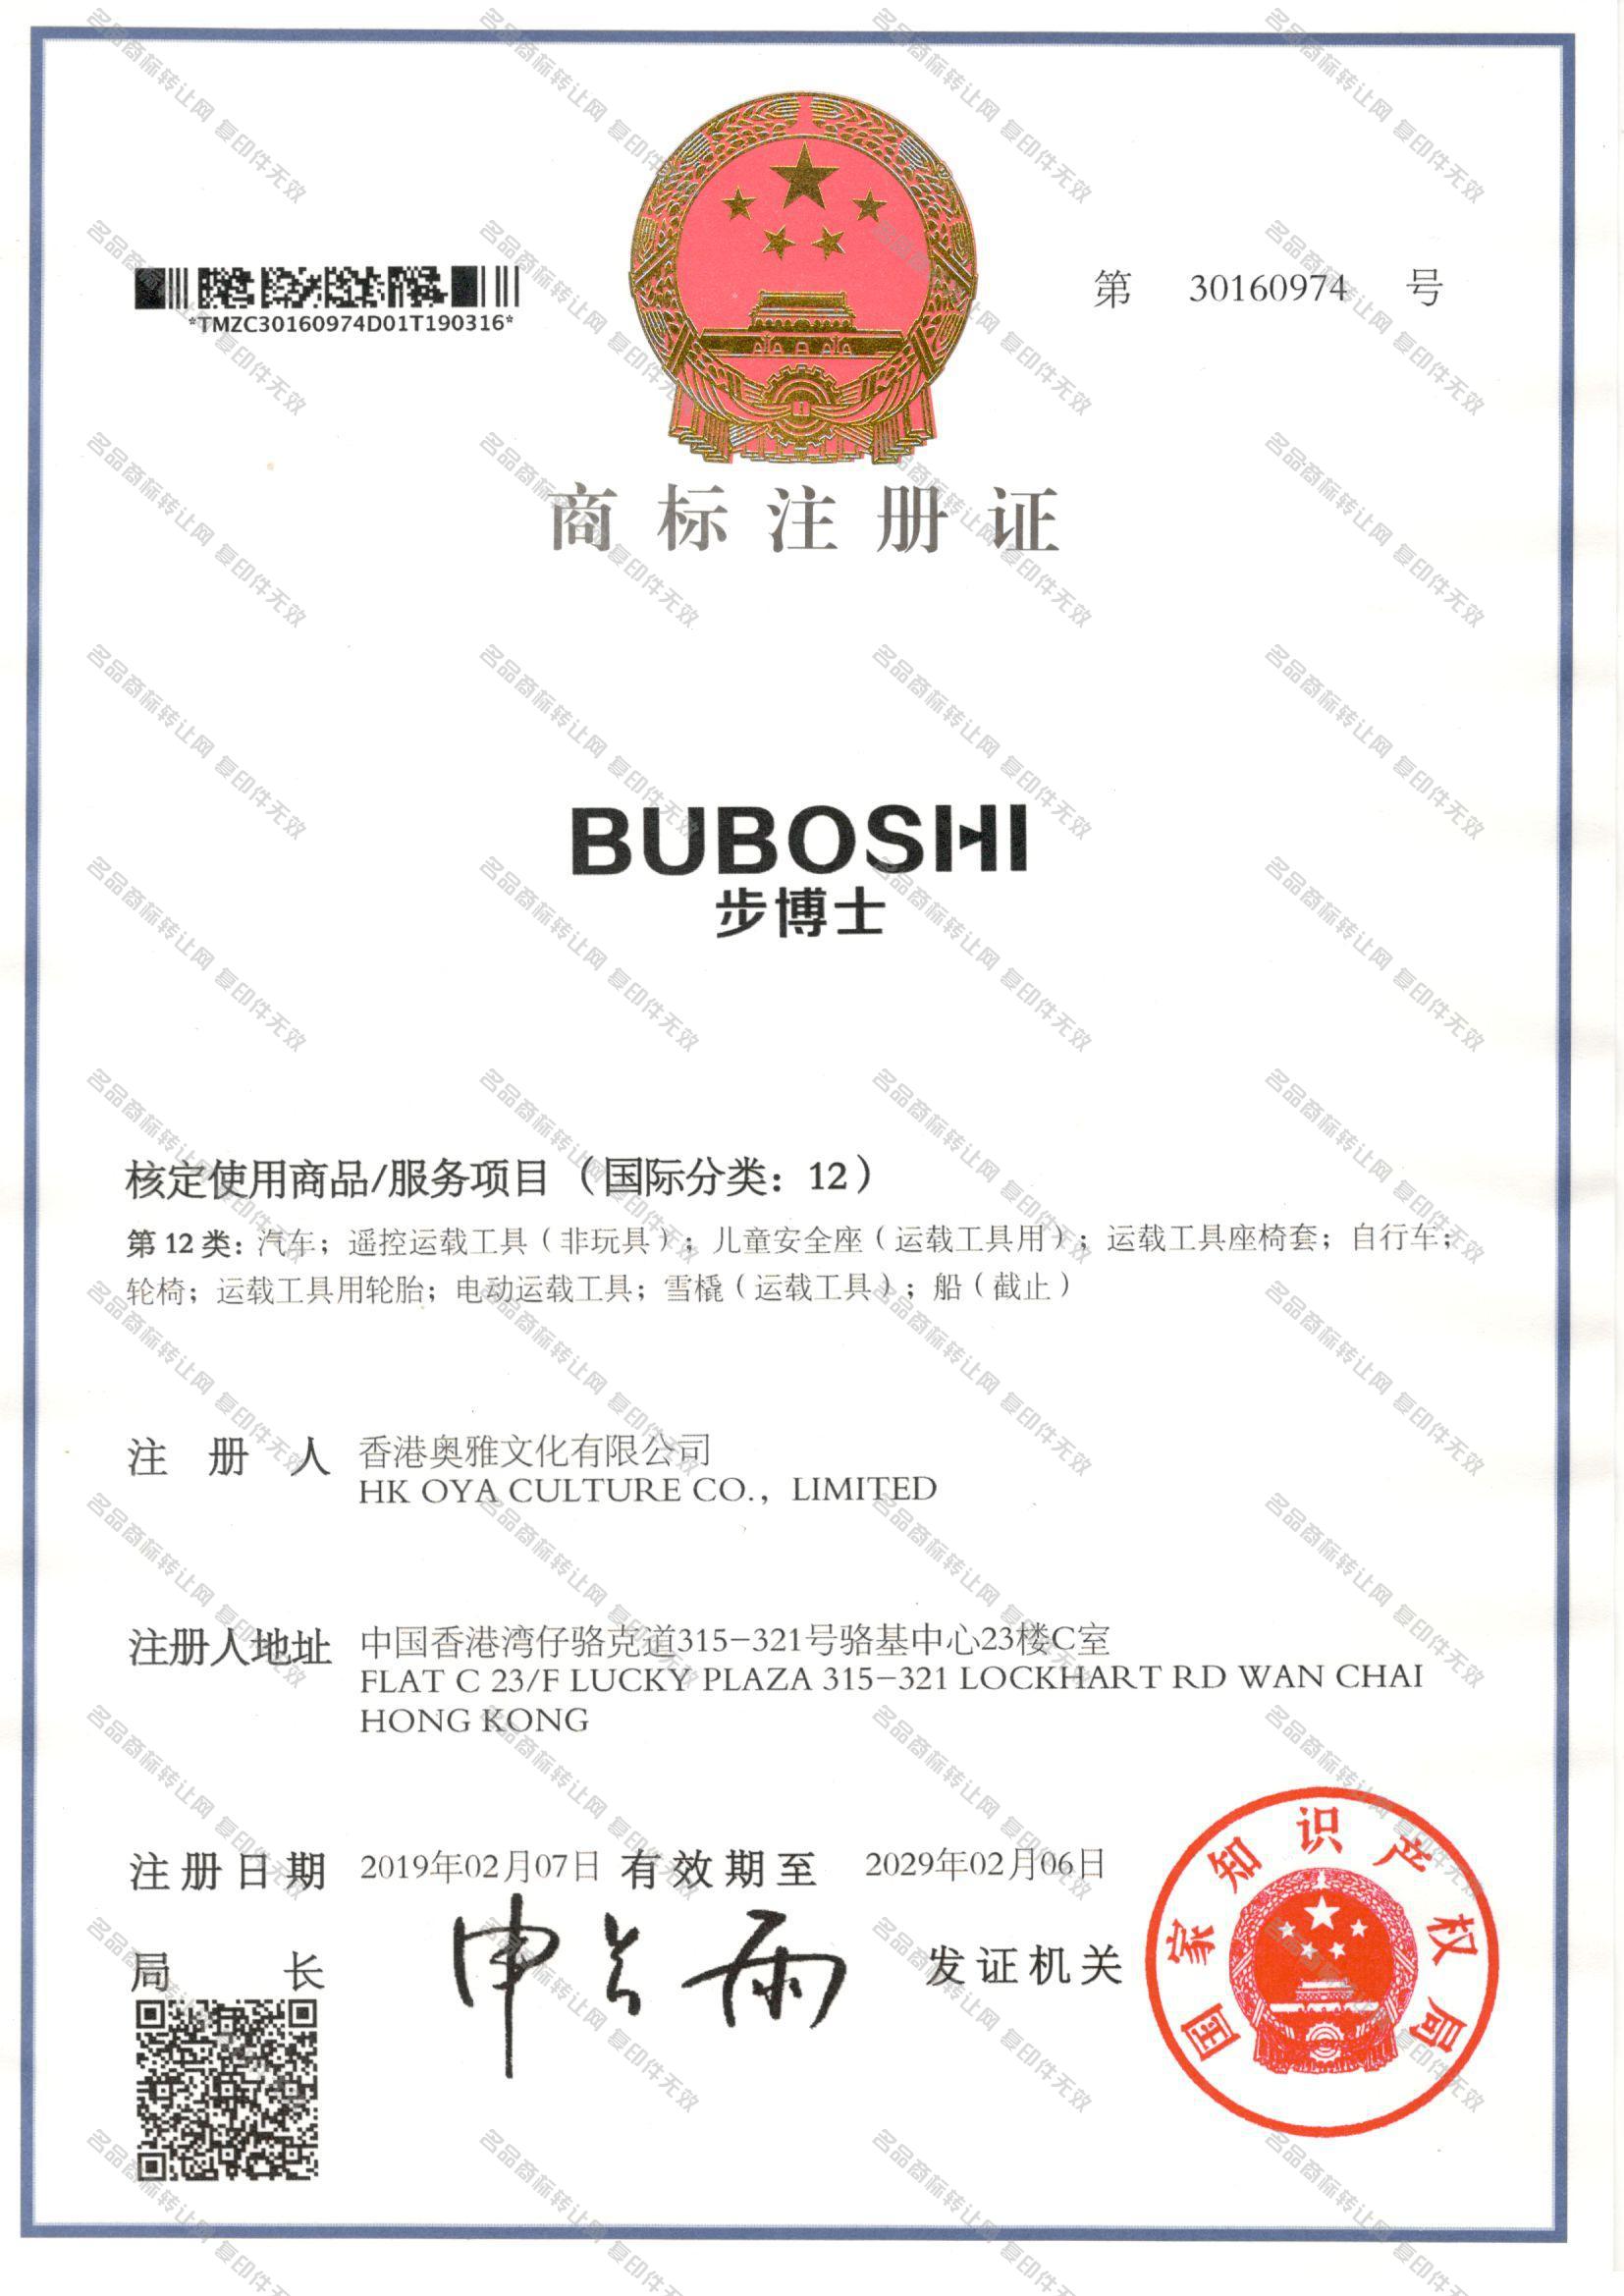 步博士 BUBOSHI注册证